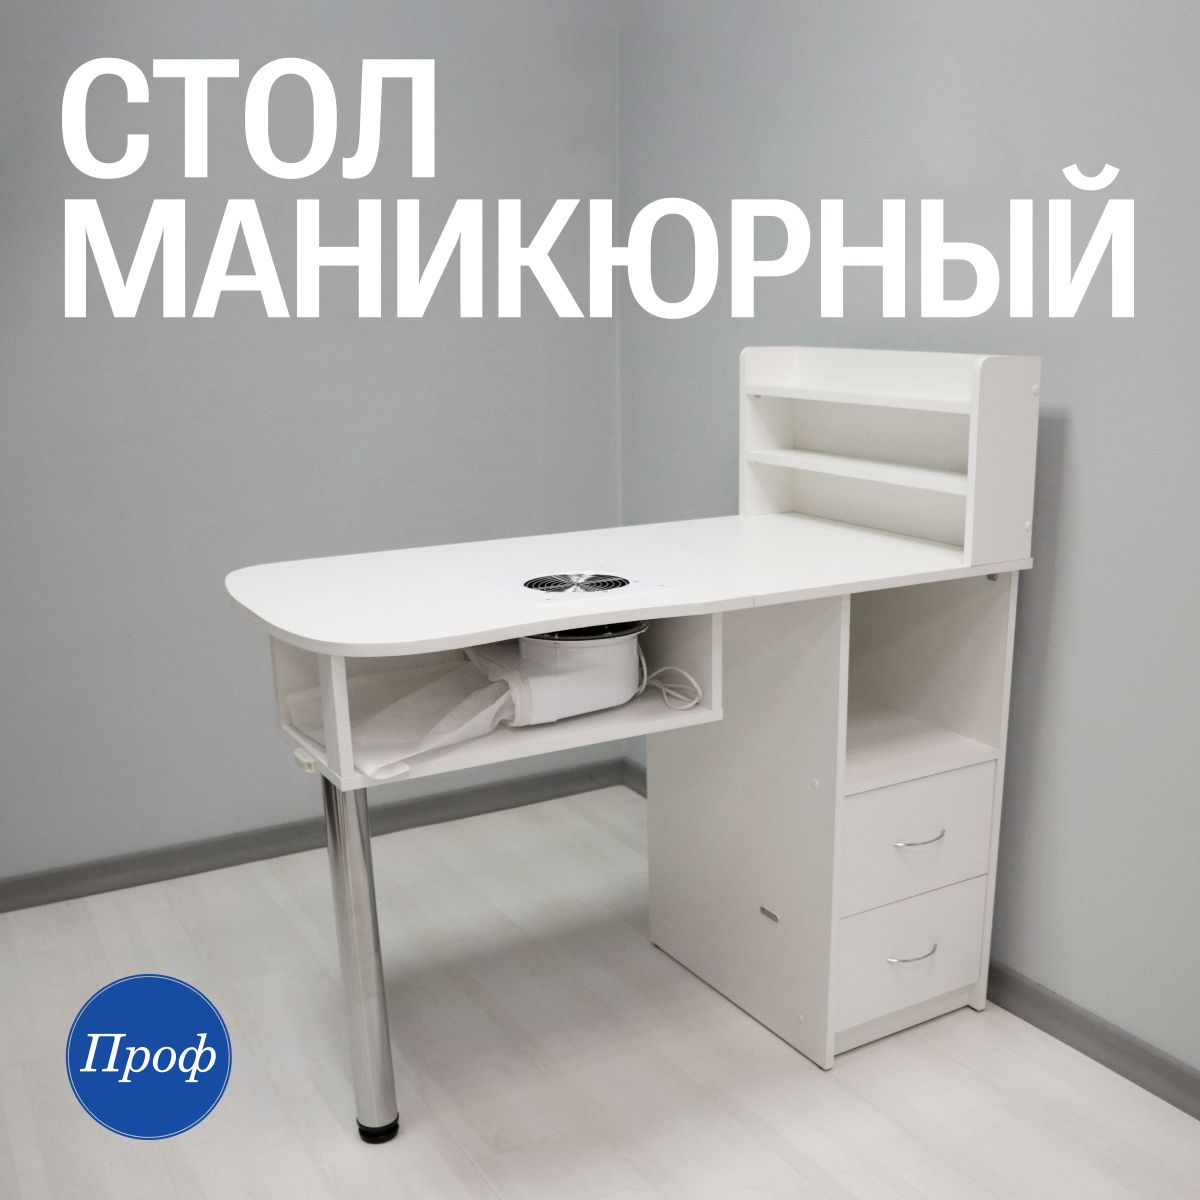 Маникюрные угловые столы. Купить недорого в Санкт-Петербурге. Интернет-магазин «Профрешение»